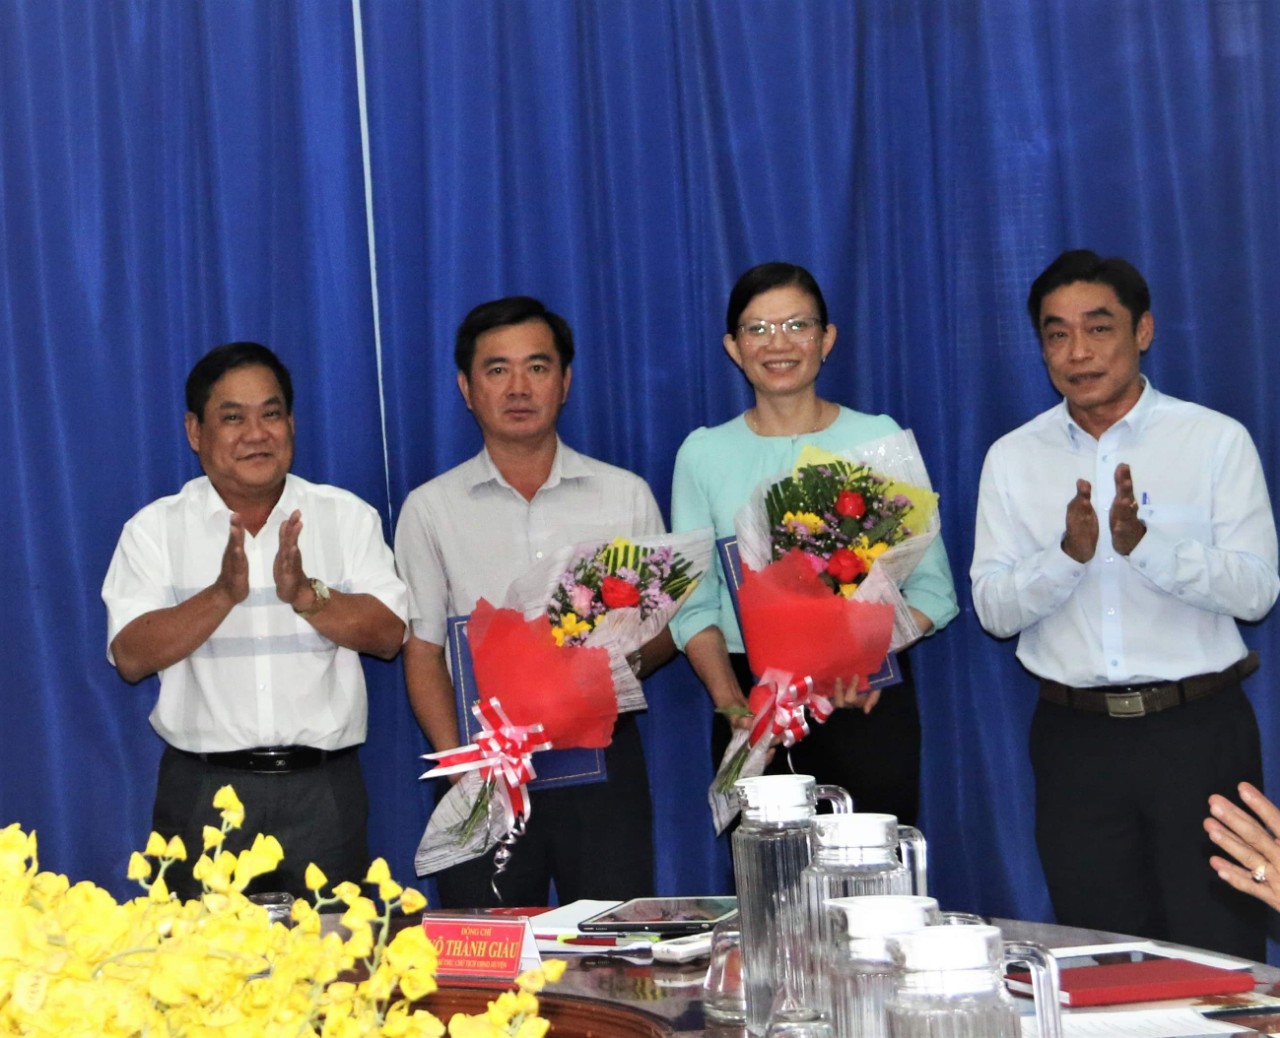 ông Võ Thành Giàu - Chủ tịch UBND và lãnh đạo Phòng Nội vụ huyện đã trao quyết định điều động, bổ nhiệm đối với ông Nguyễn Tấn Nam và bà Đỗ Thị Khôi Nguyên